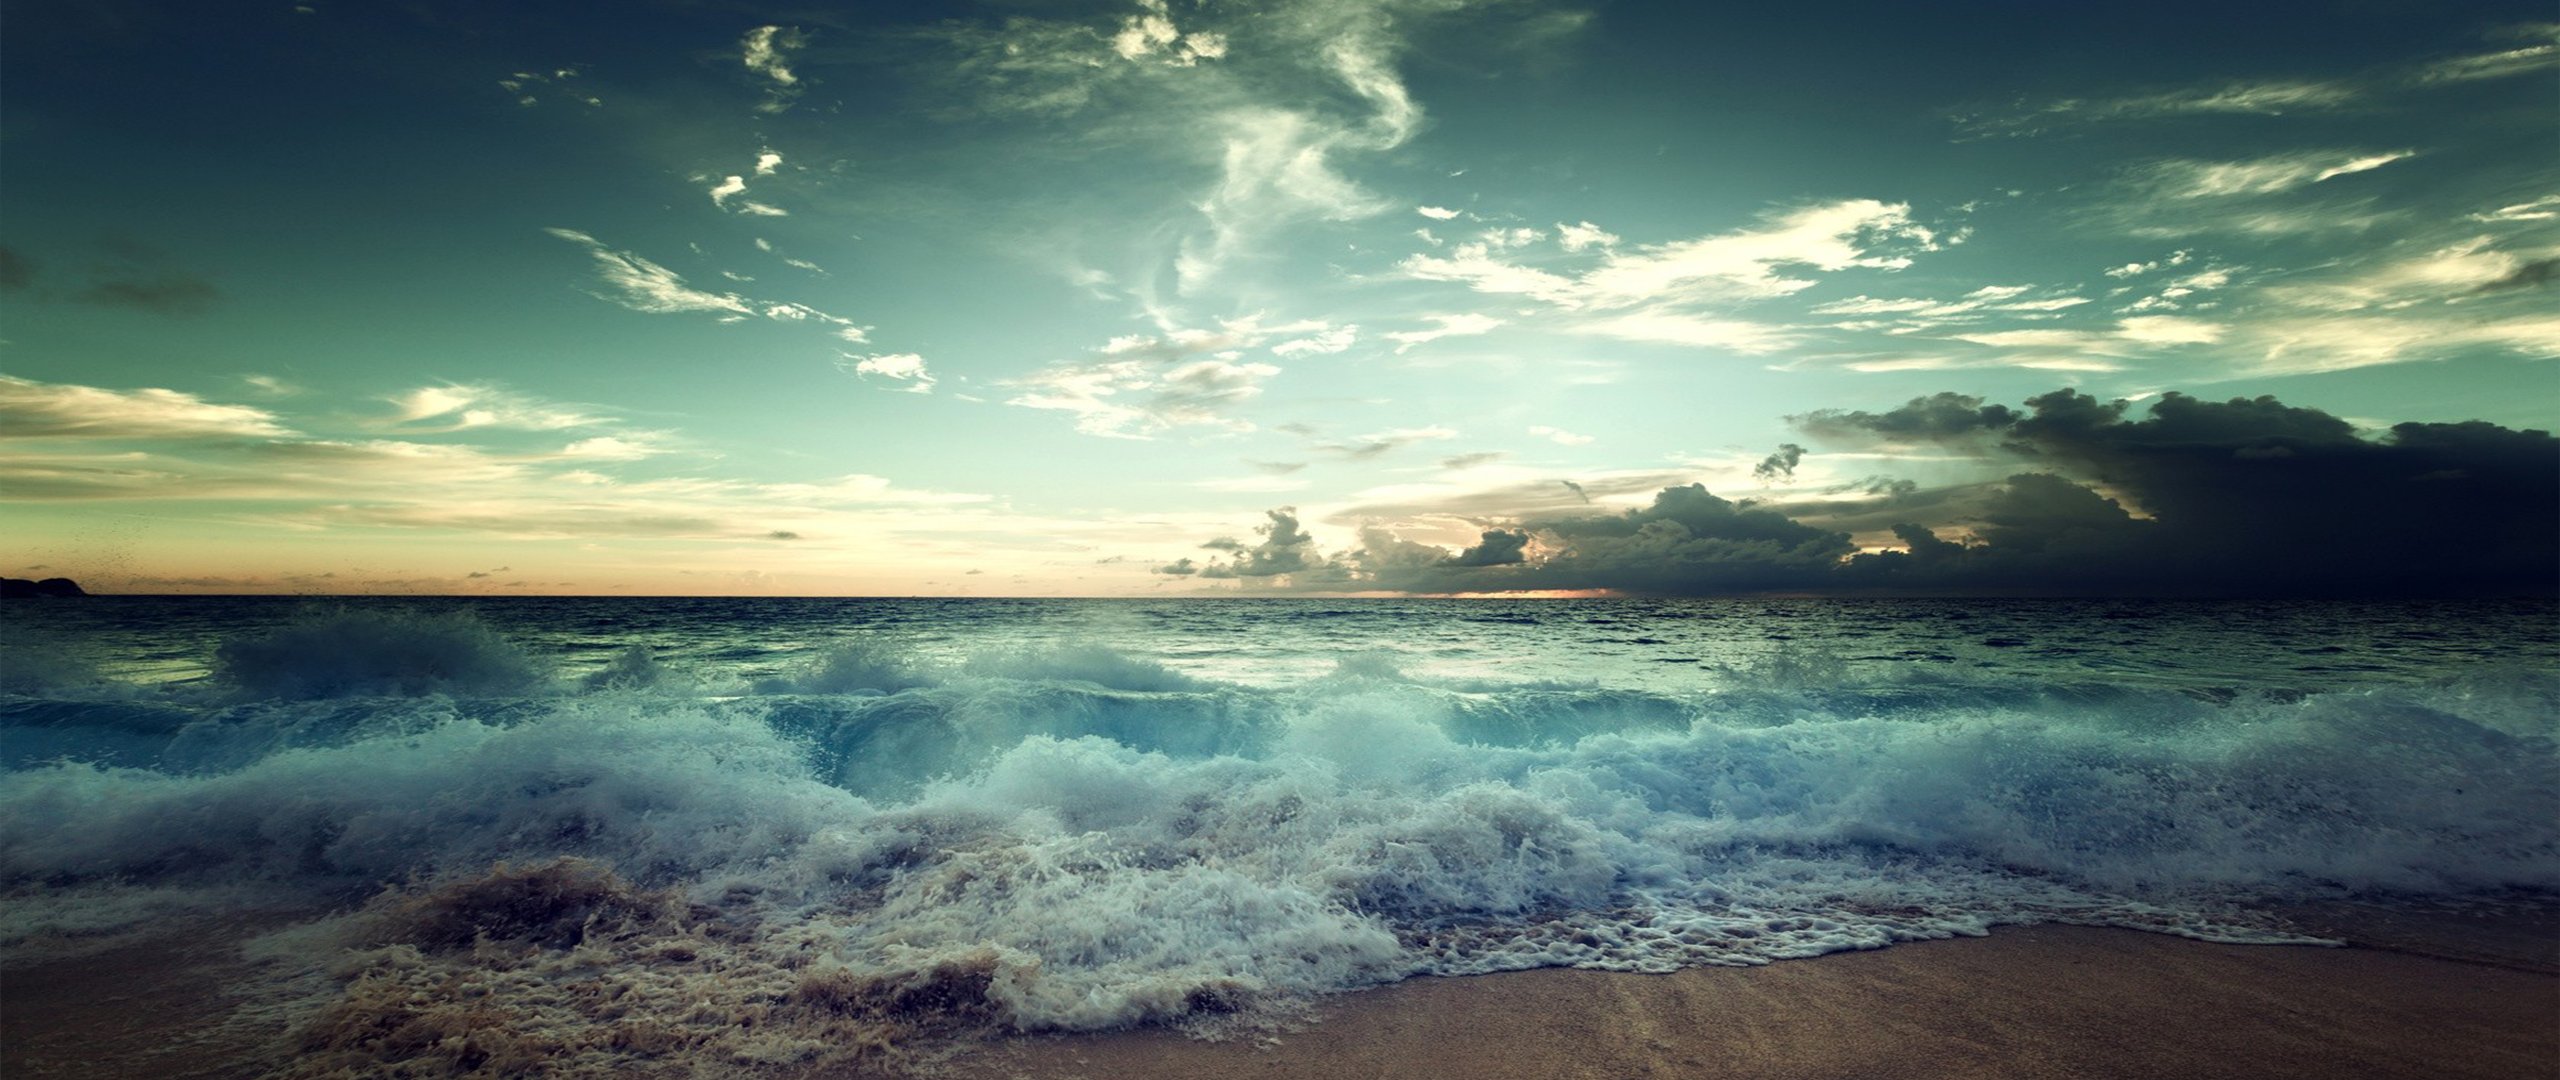 Скачать обои бесплатно Море, Горизонт, Океан, Волна, Земля/природа картинка на рабочий стол ПК